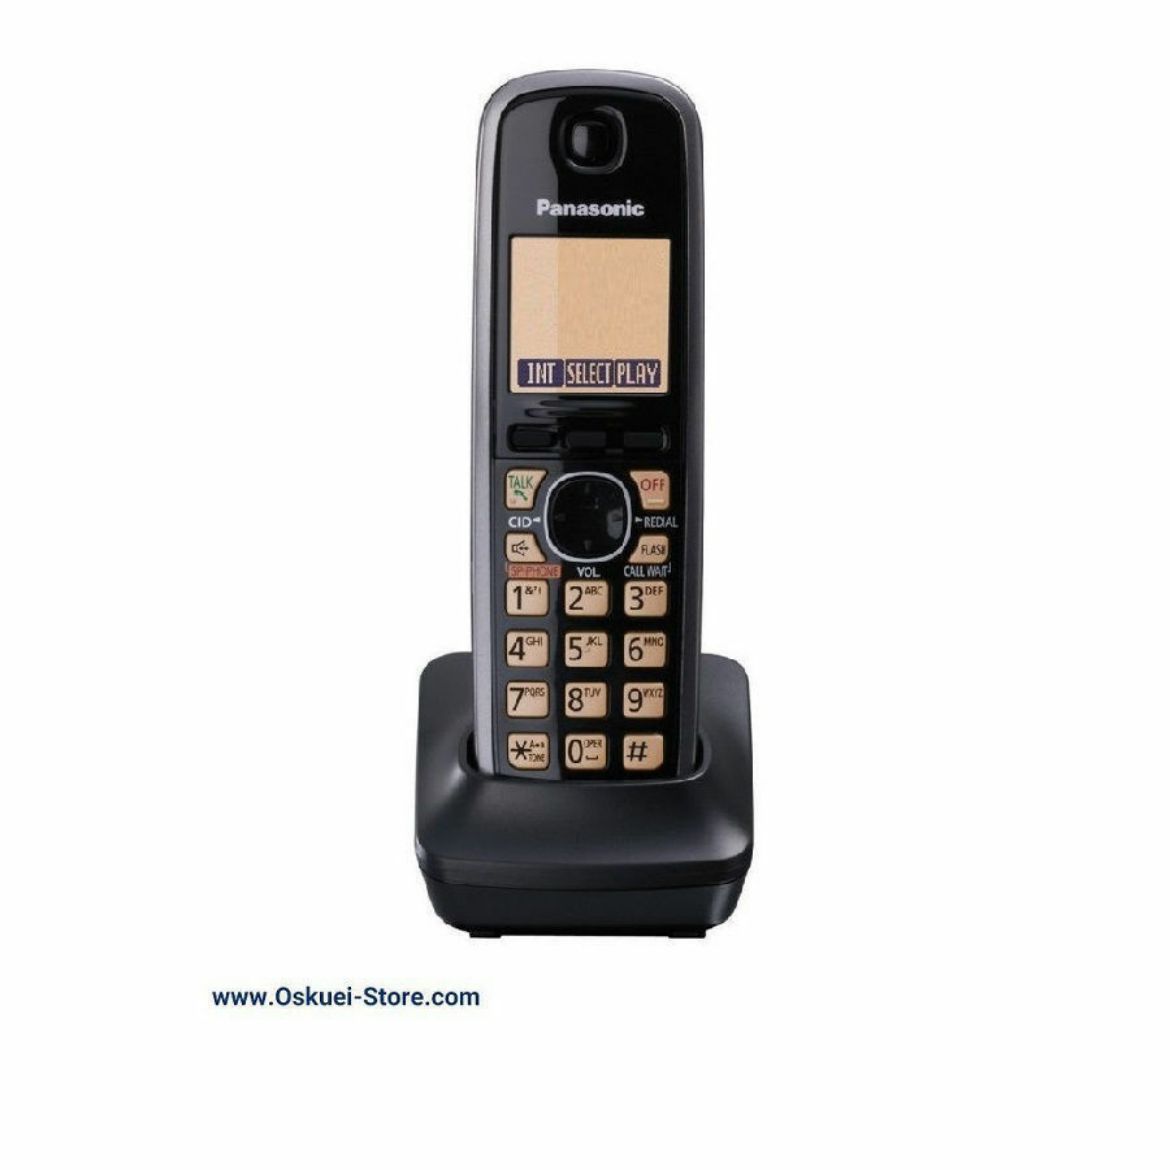 Panasonic KX-TGA371 Cordless Telephone Black Front Lights On